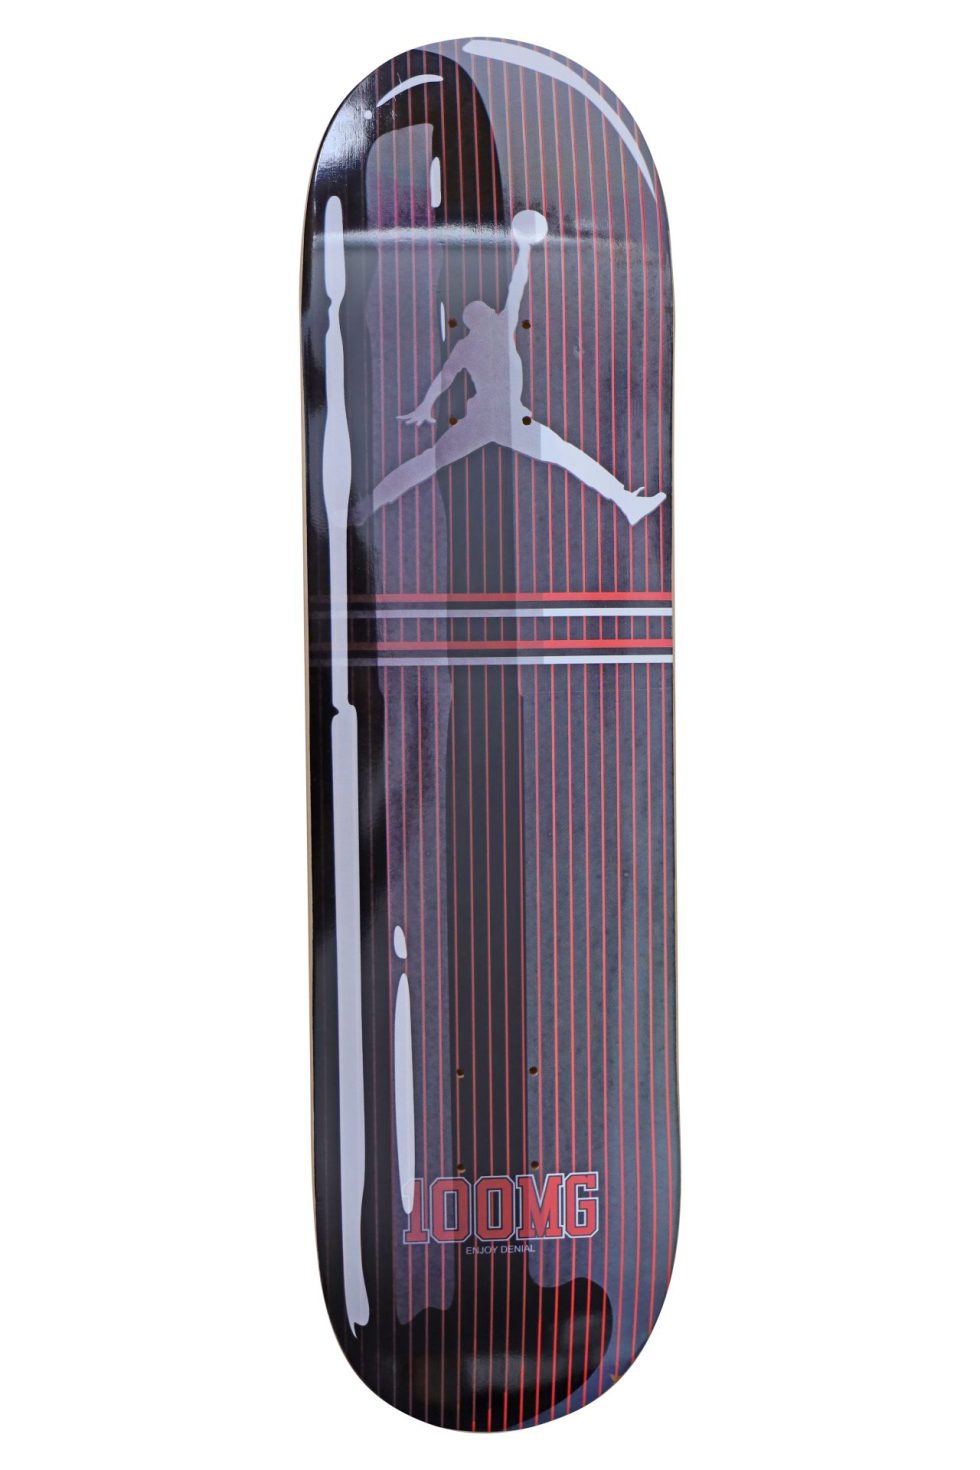 11660A DENIAL x 1xRun Out Patient Skateboard Limited Edition – Baer & Bosch